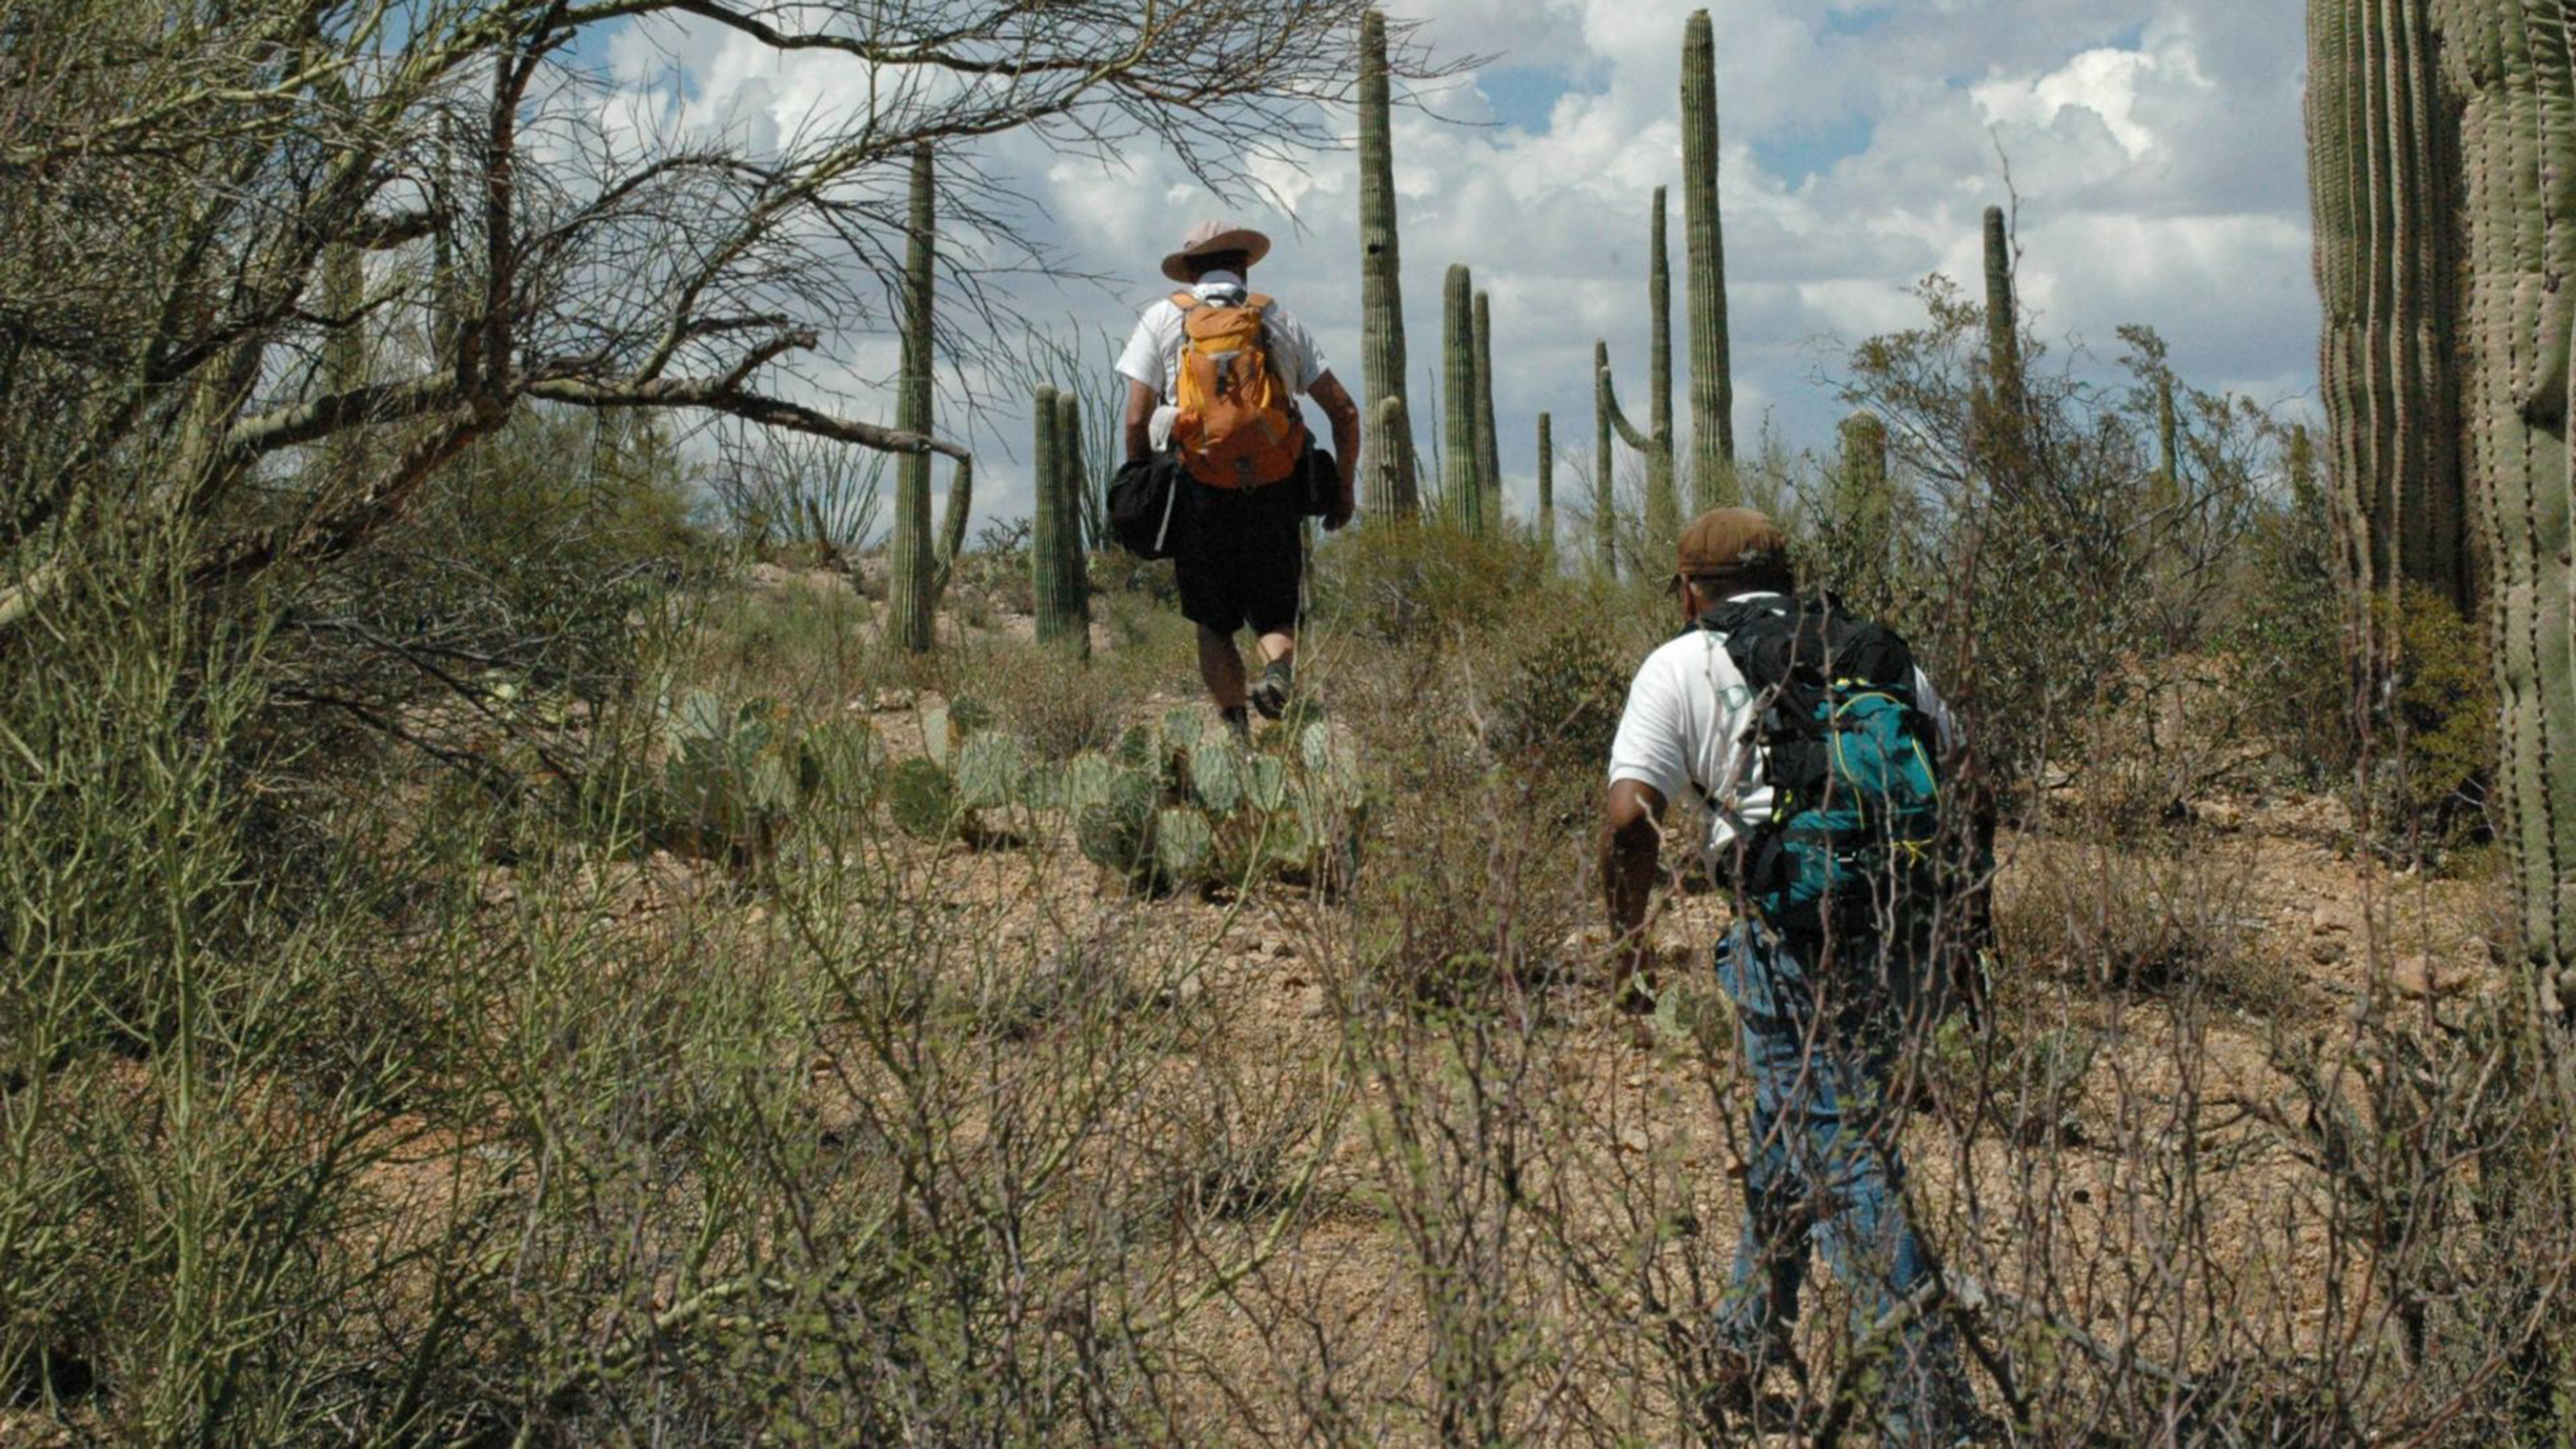 La organización sin fines de lucro de búsqueda y rescate Los Angeles Del Desierto (Desert Angels) que trabaja en la Reserva Tohono O'odham en el sur de Arizona.